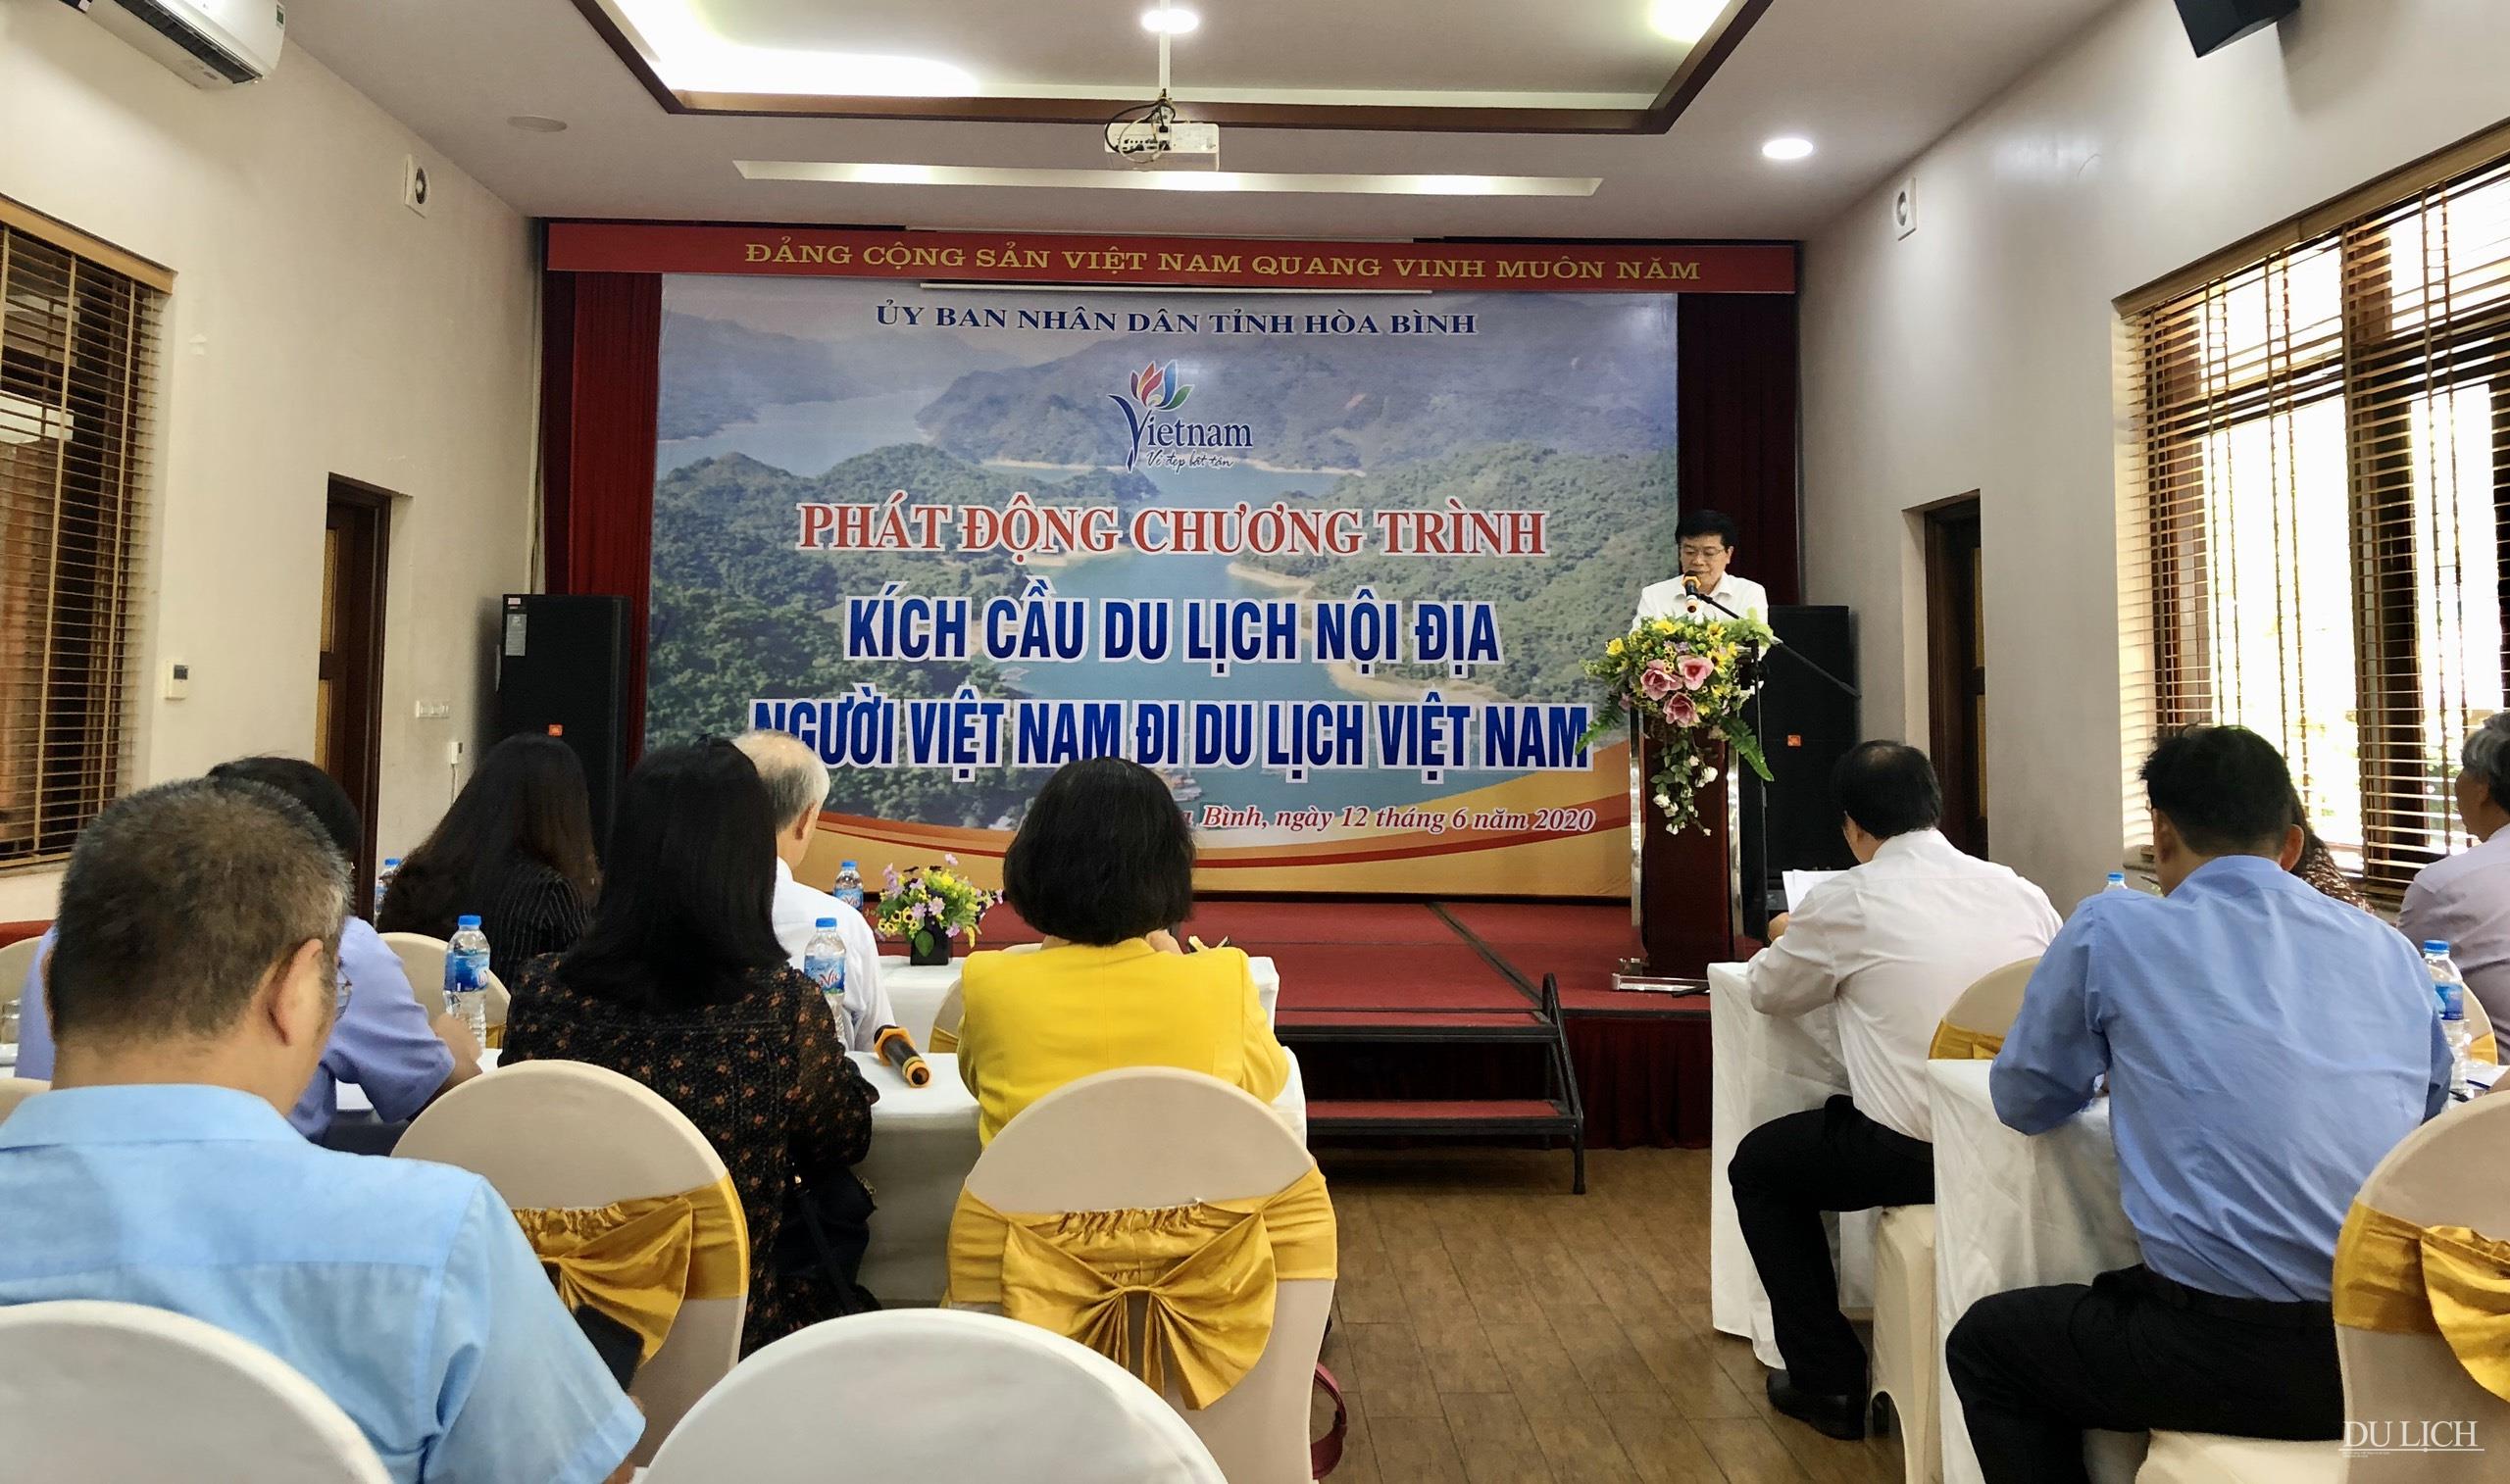 Phó Chủ tịch UBND tỉnh Hòa Bình Nguyễn Văn Chương phát biểu tại buổi lễ